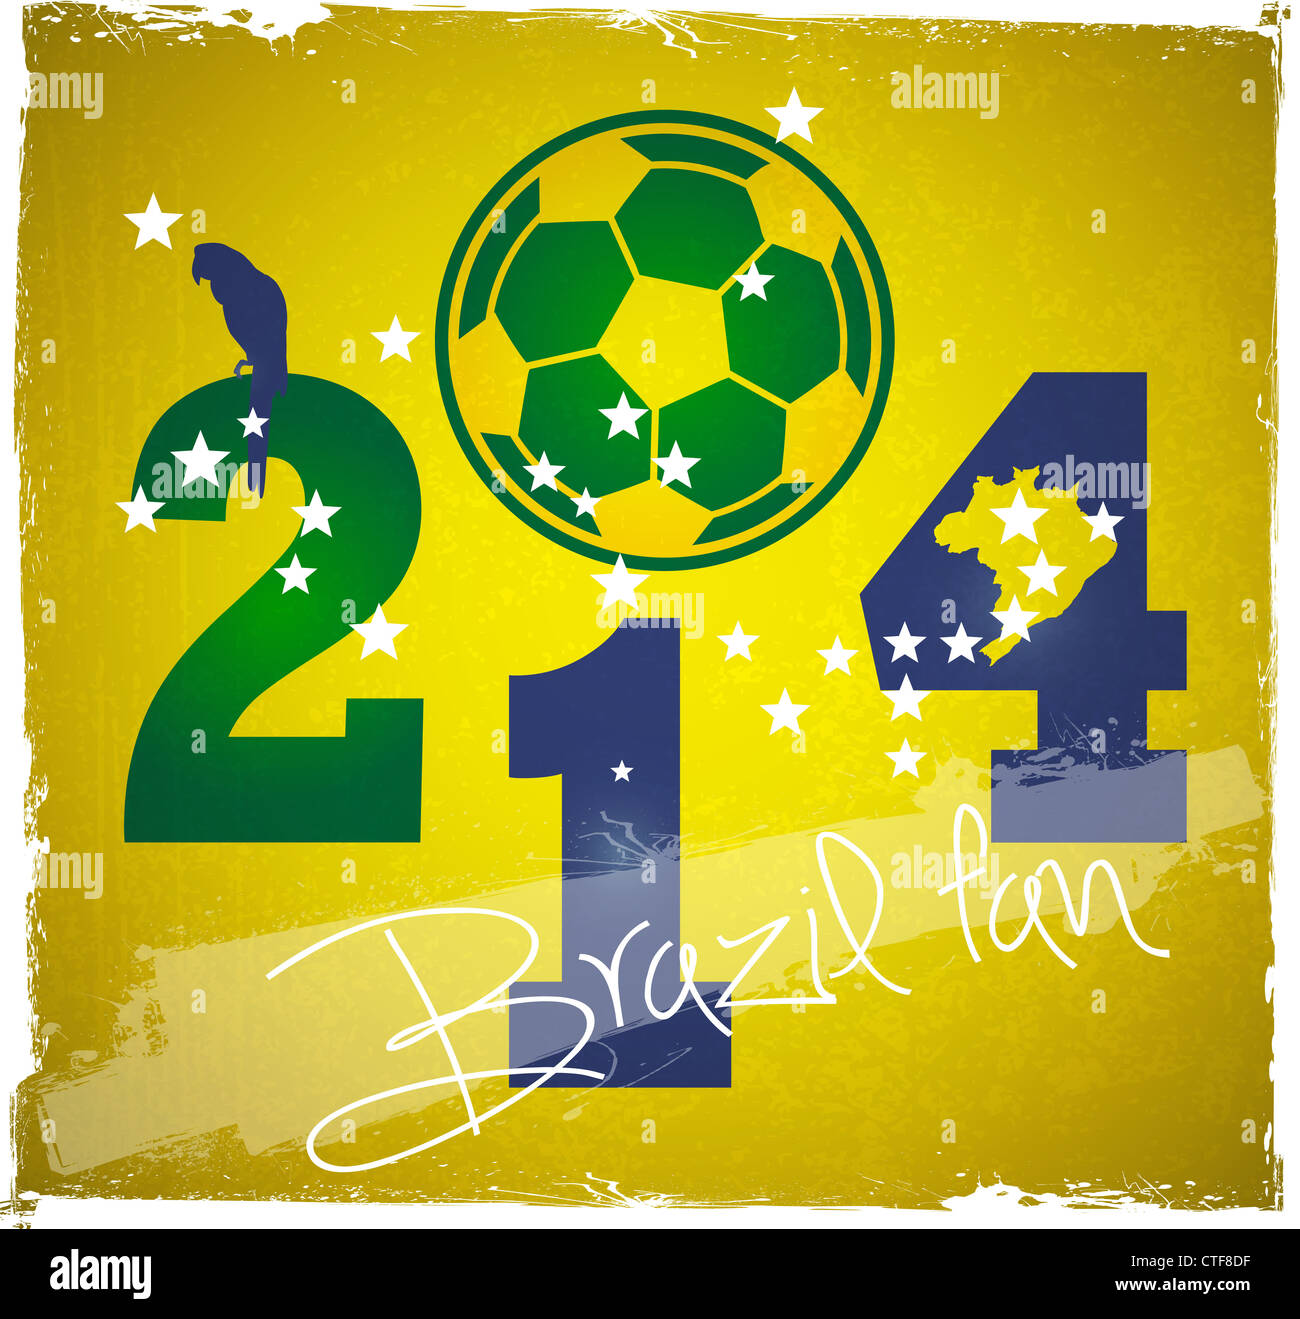 2014 Brasile fan coppa del mondo di calcio poster sullo sfondo grunge Foto Stock